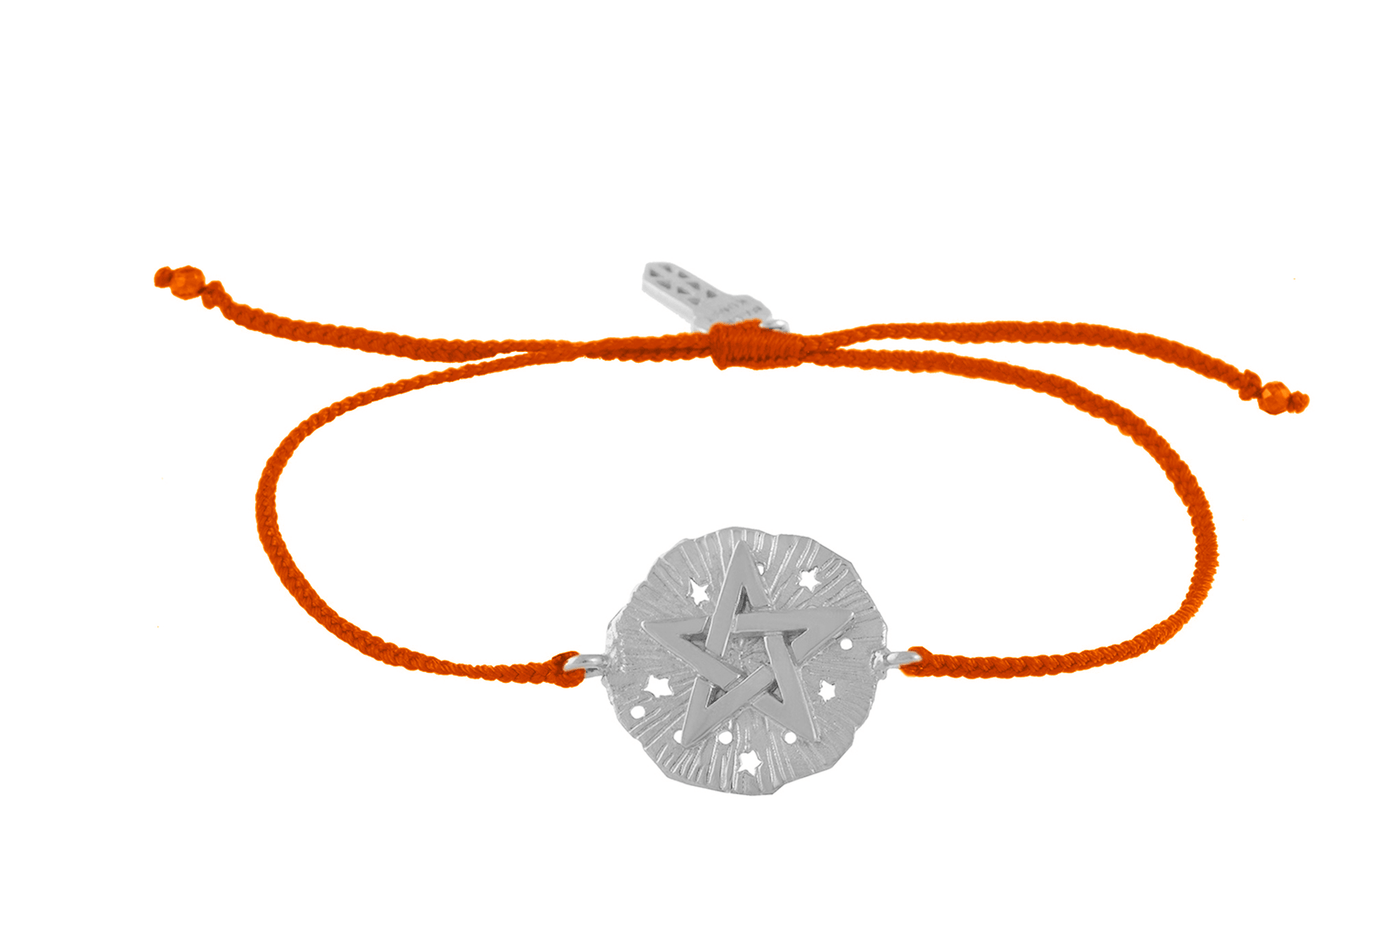 String bracelet with Pentagram medallion talisman. Silver